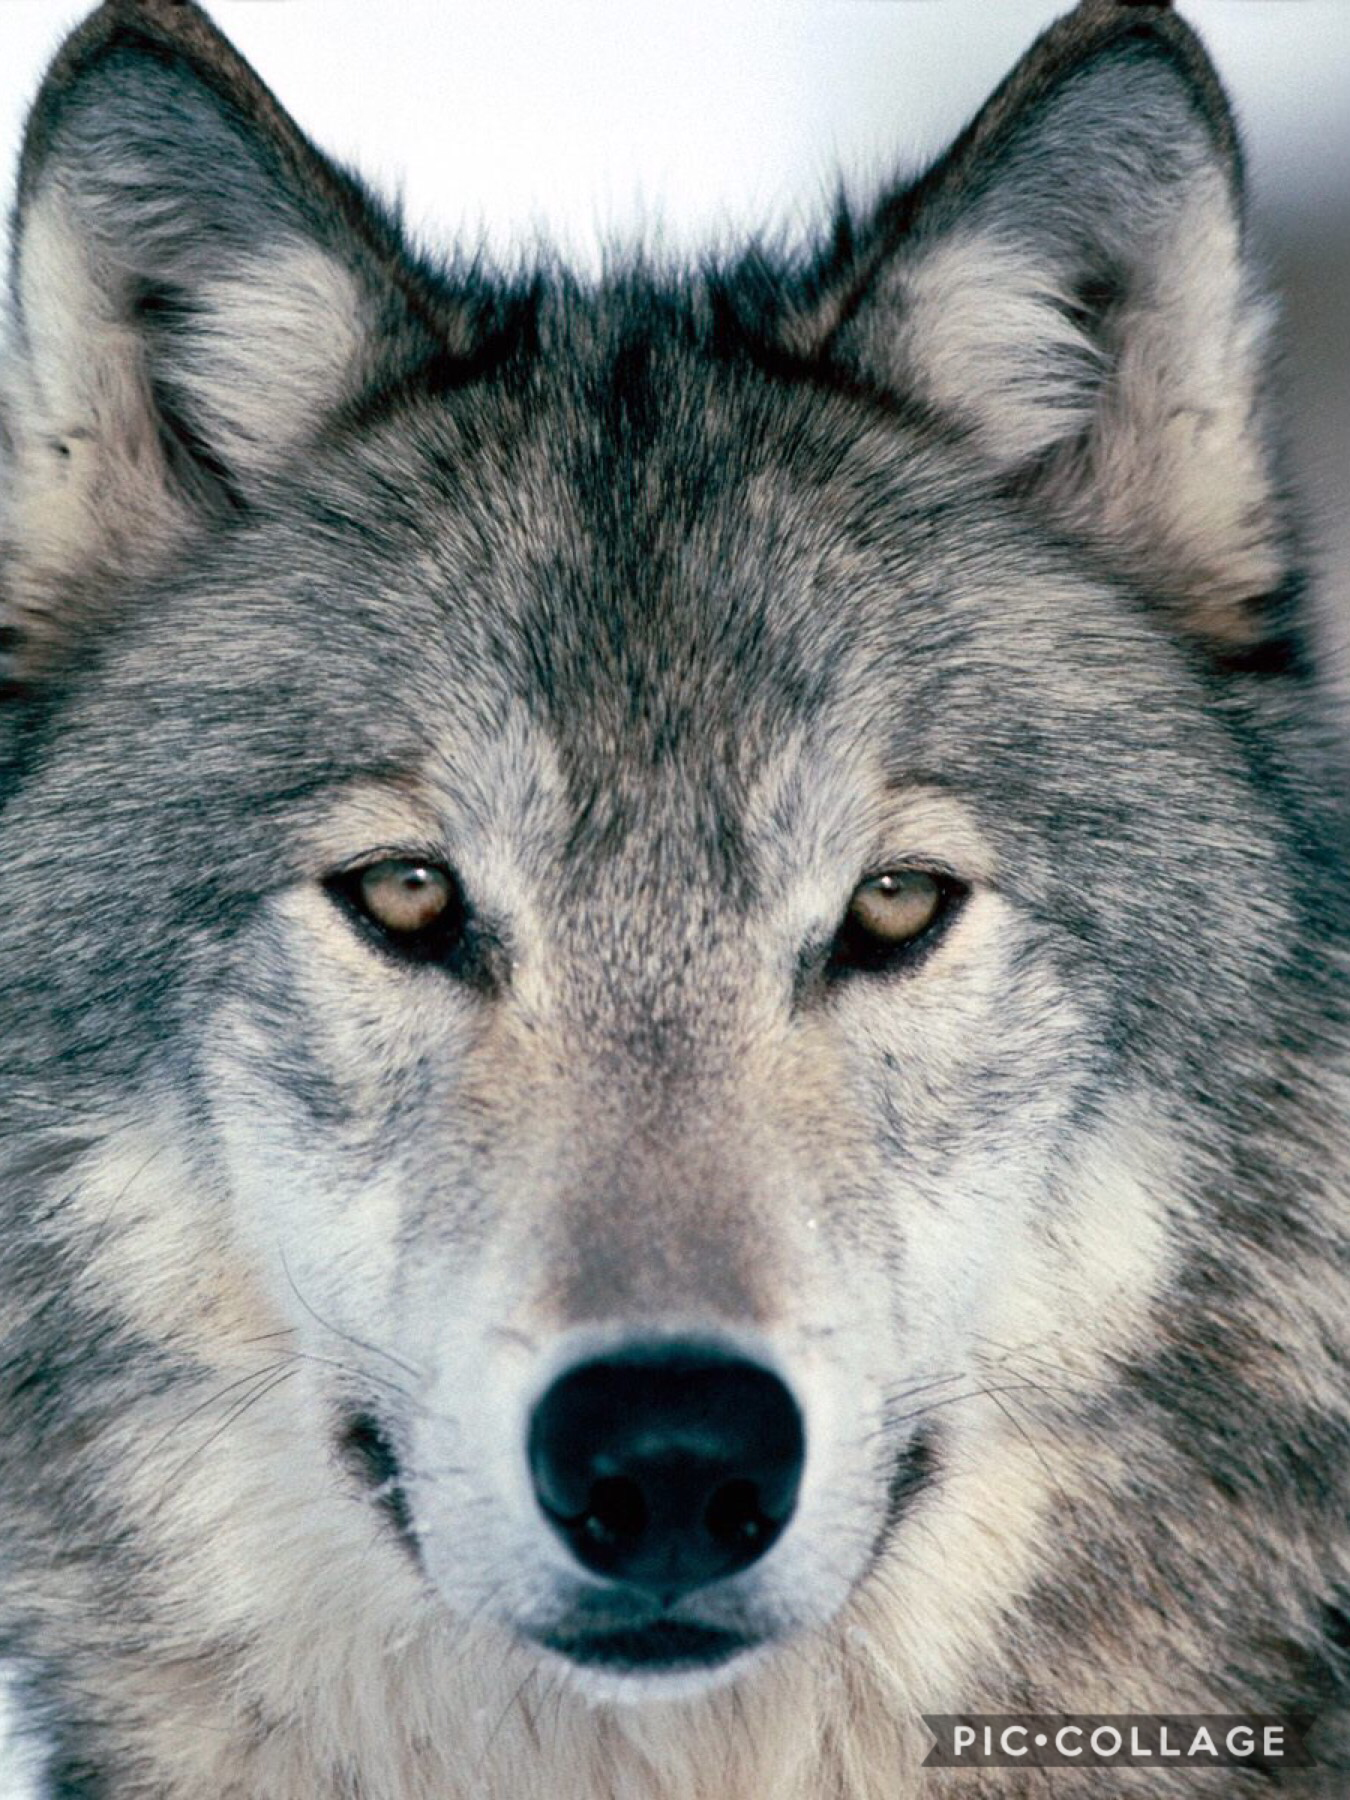 I love wolfs